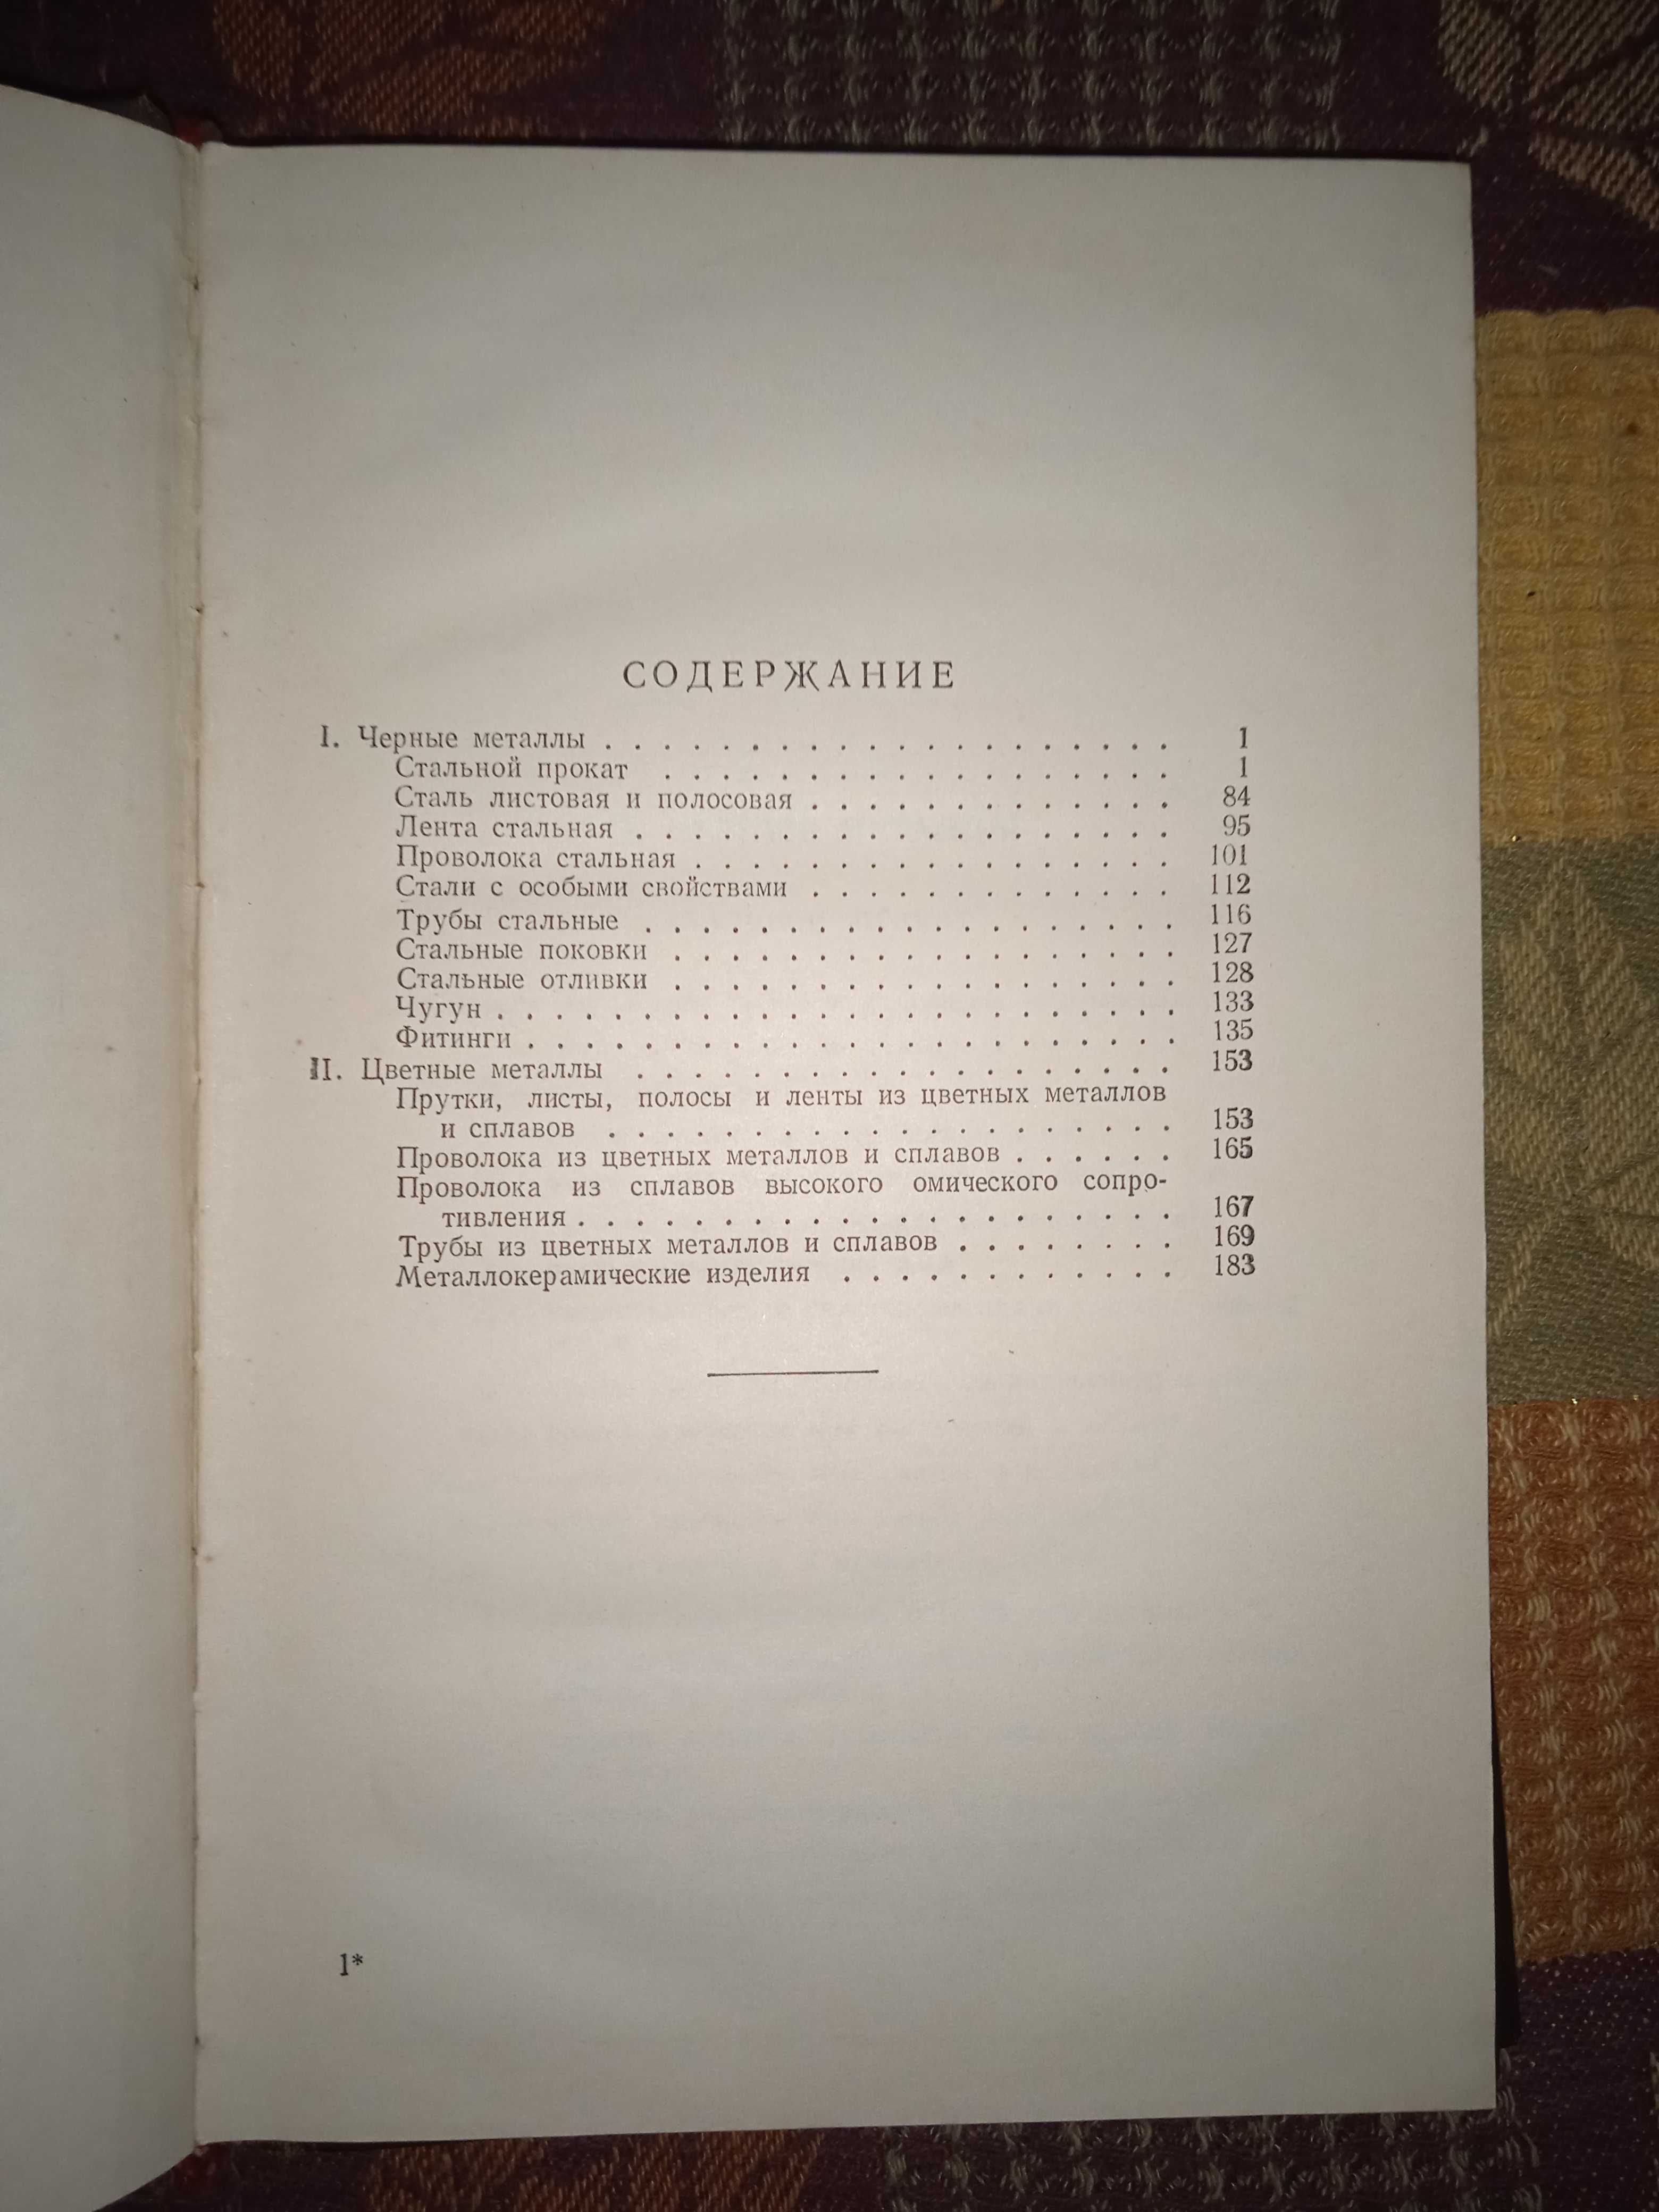 Справочник металлиста 1959 том 3 книга вторая